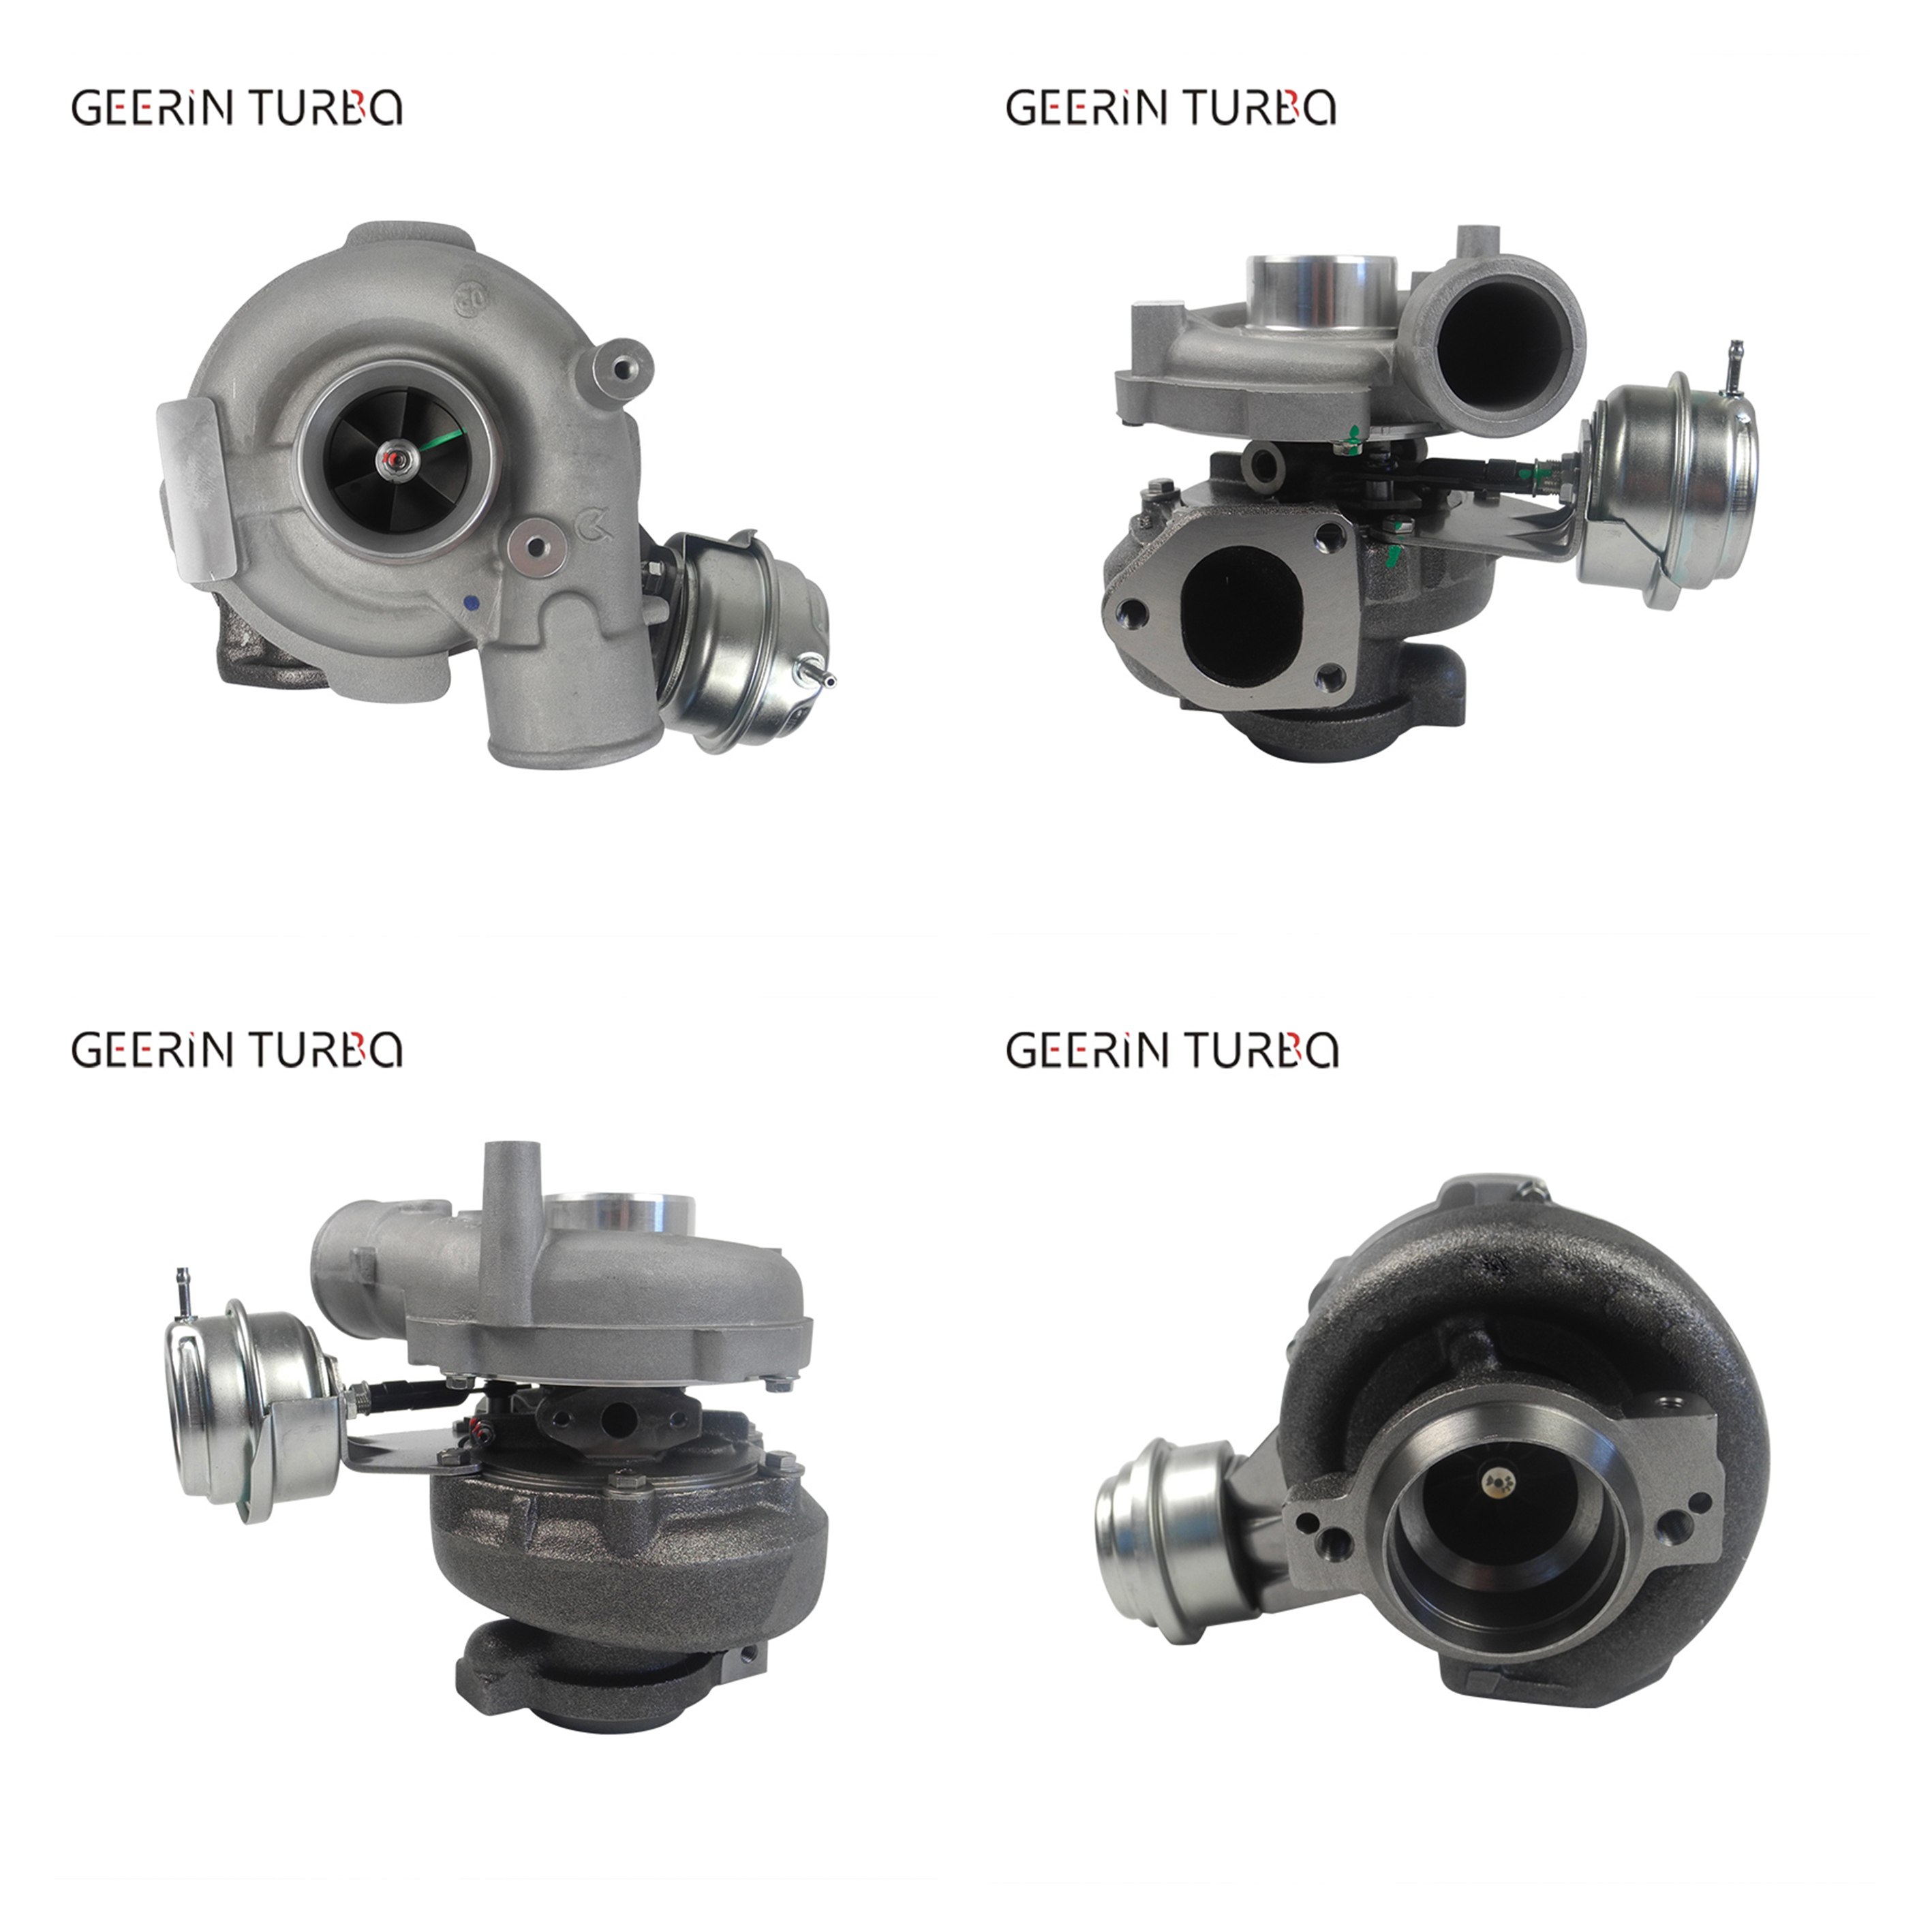 Kaufen GT2256V 700935-5003S Turbokompressor für BMW X5 3.0 d (E53);GT2256V 700935-5003S Turbokompressor für BMW X5 3.0 d (E53) Preis;GT2256V 700935-5003S Turbokompressor für BMW X5 3.0 d (E53) Marken;GT2256V 700935-5003S Turbokompressor für BMW X5 3.0 d (E53) Hersteller;GT2256V 700935-5003S Turbokompressor für BMW X5 3.0 d (E53) Zitat;GT2256V 700935-5003S Turbokompressor für BMW X5 3.0 d (E53) Unternehmen